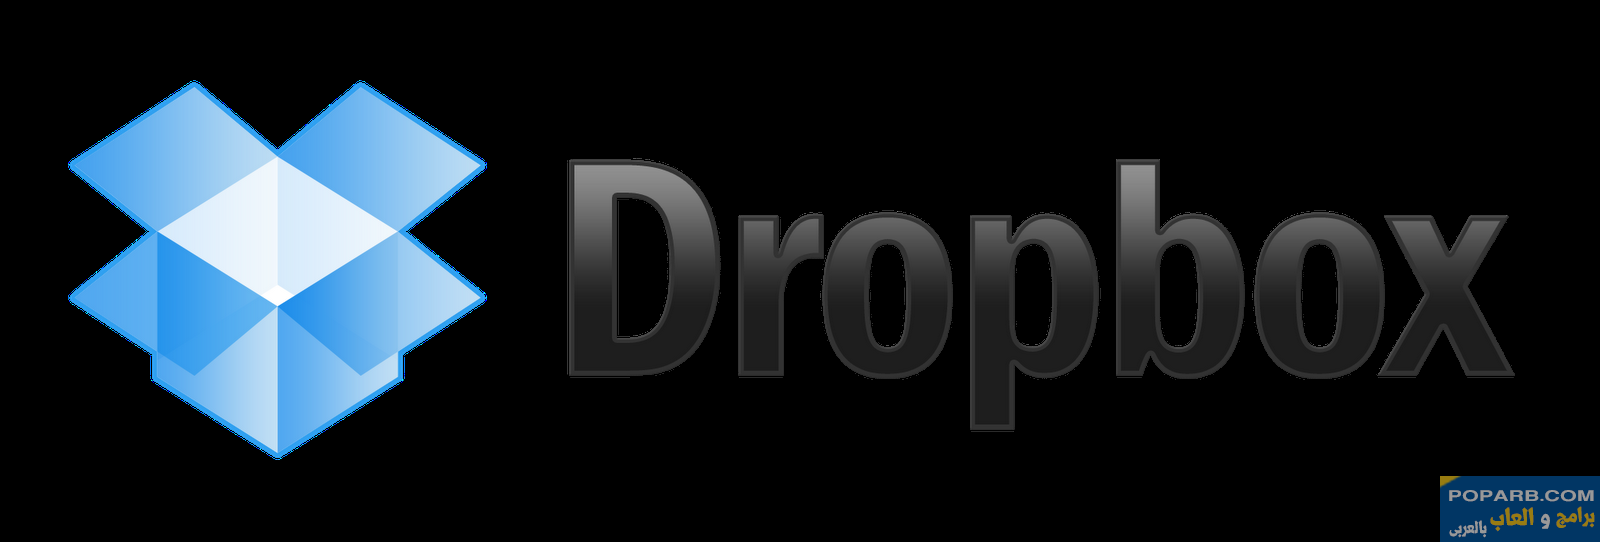 تنزيل وتحميل دروب بوكس للحاسوب 2022 Dropbox مجانا اخر نسخة-Download Drop Box for PC 2022 Dropbox Free latest version